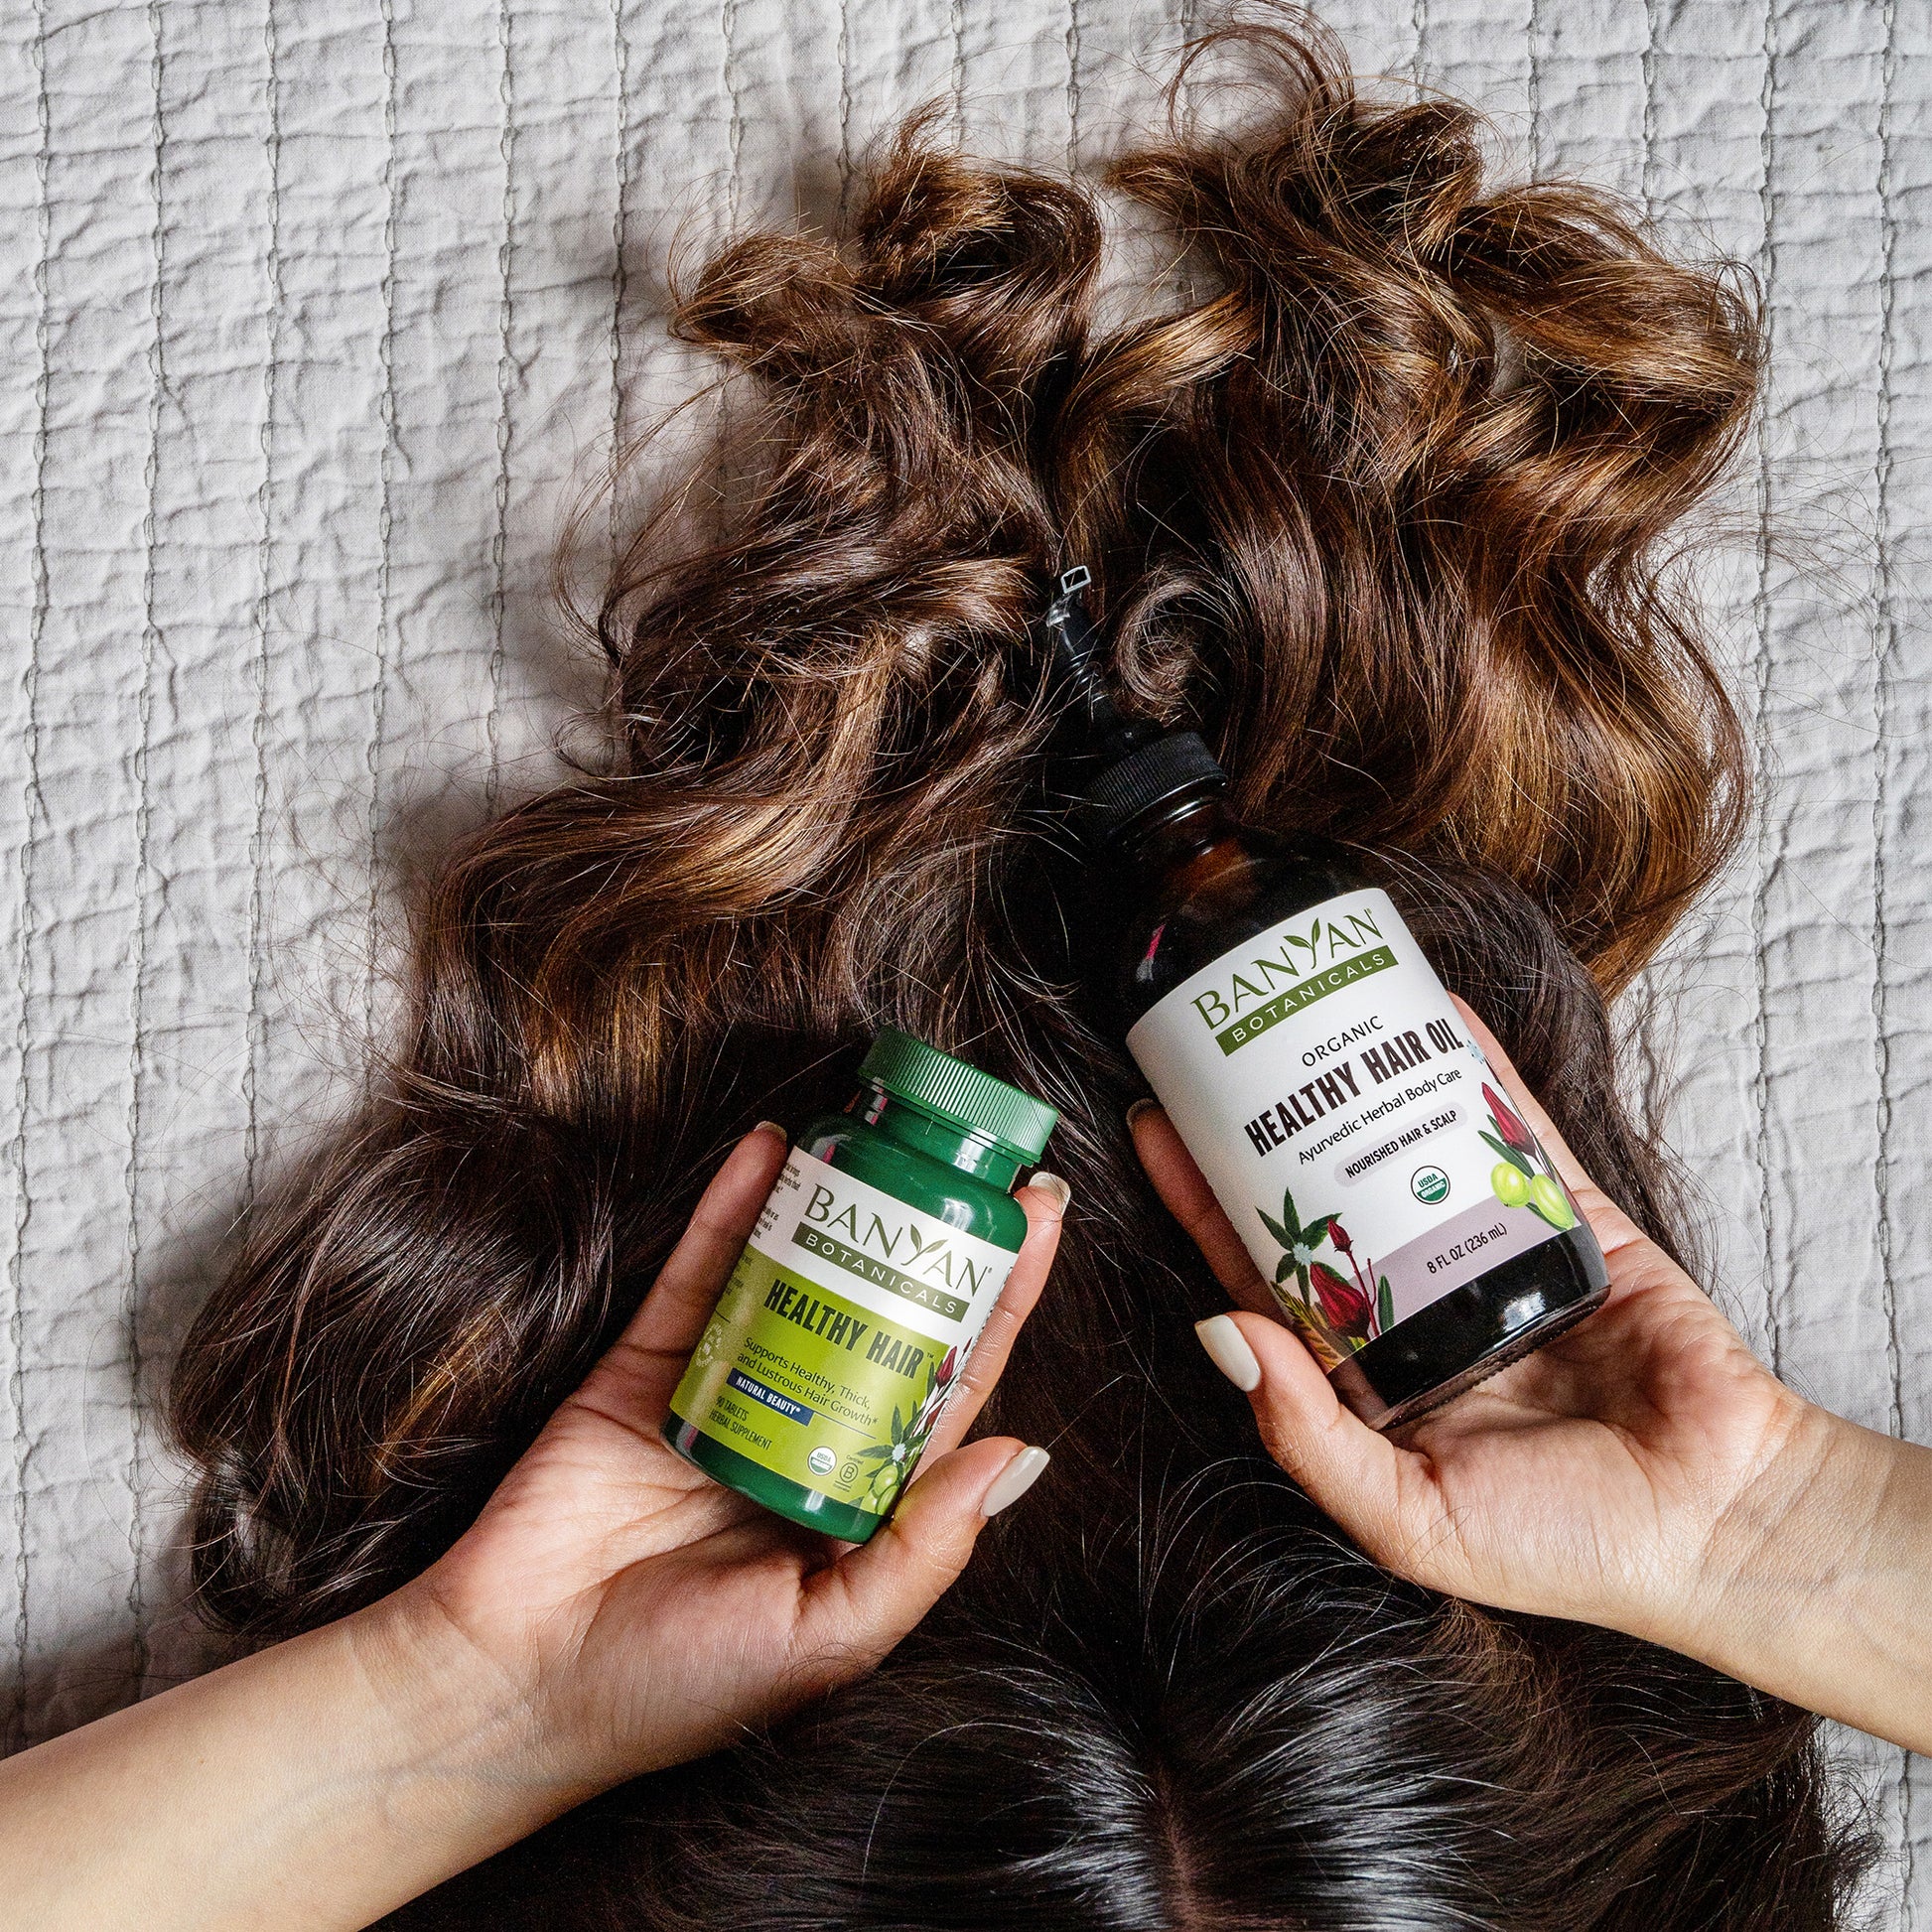 Woman holding healthy hair tablets and healthy hair oil near hair